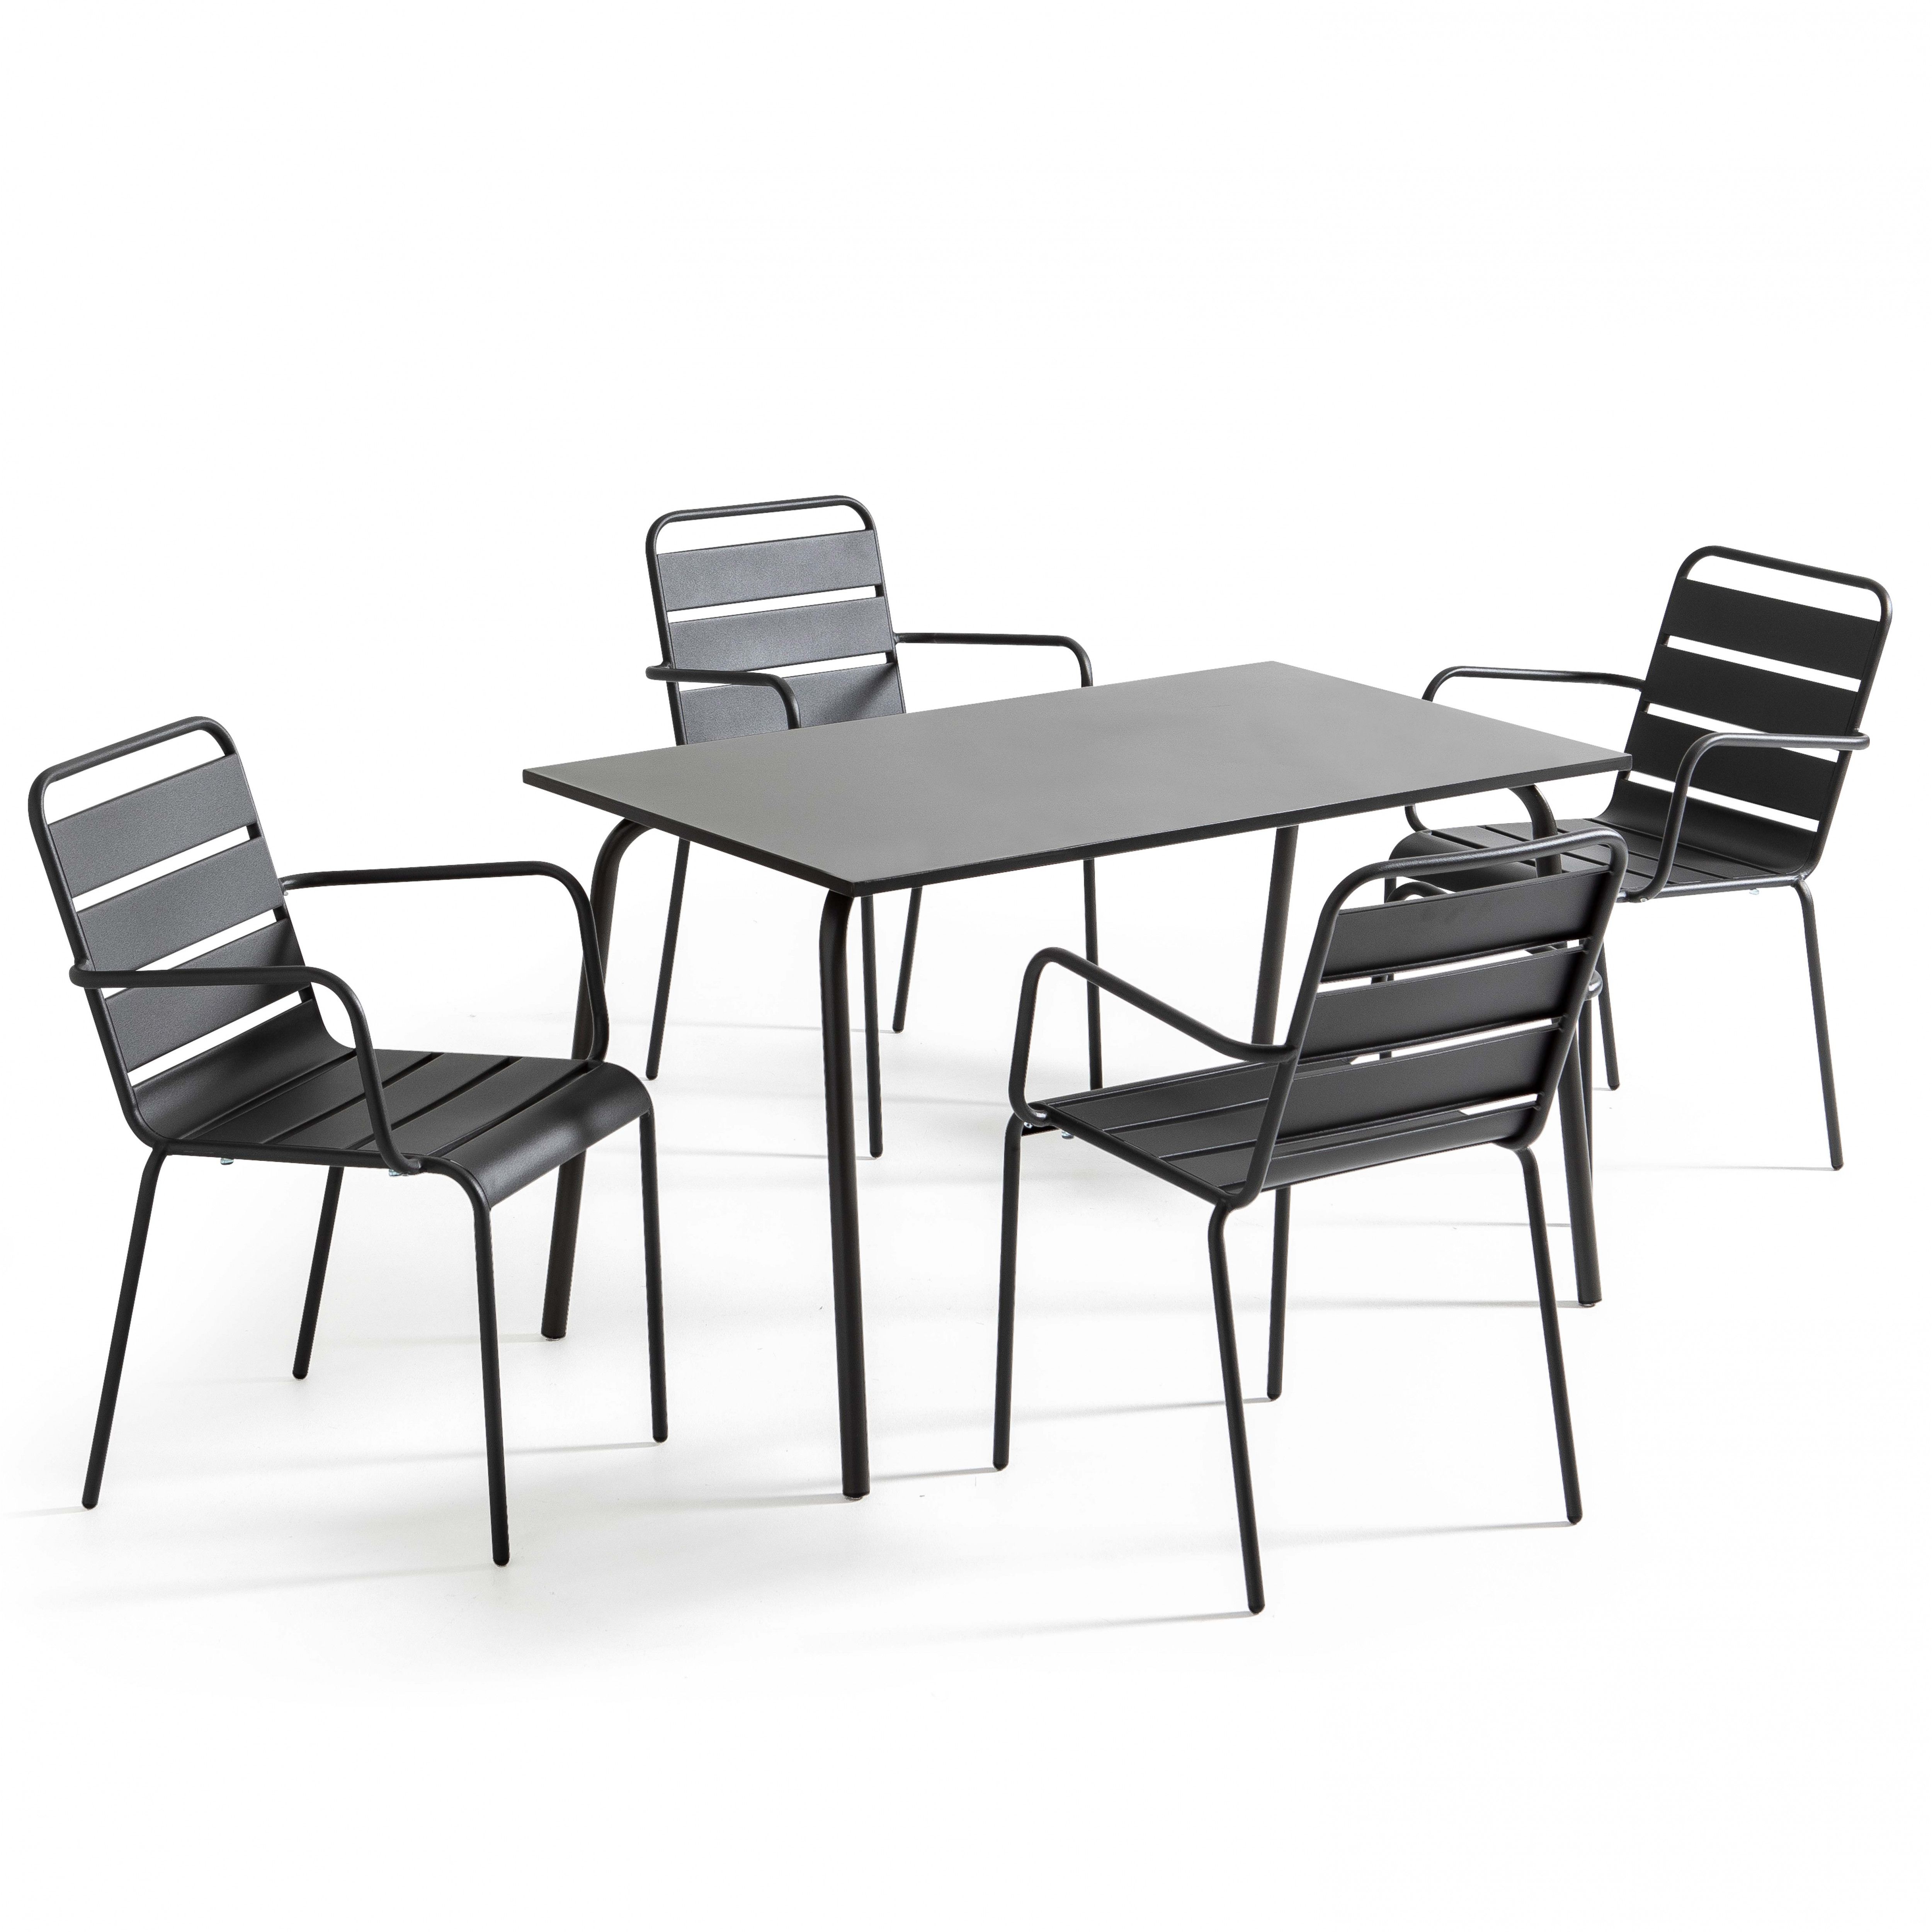 Ensemble table rectangulaire (120 x 70 x 72 cm) et 4 chaises avec accoudoirs